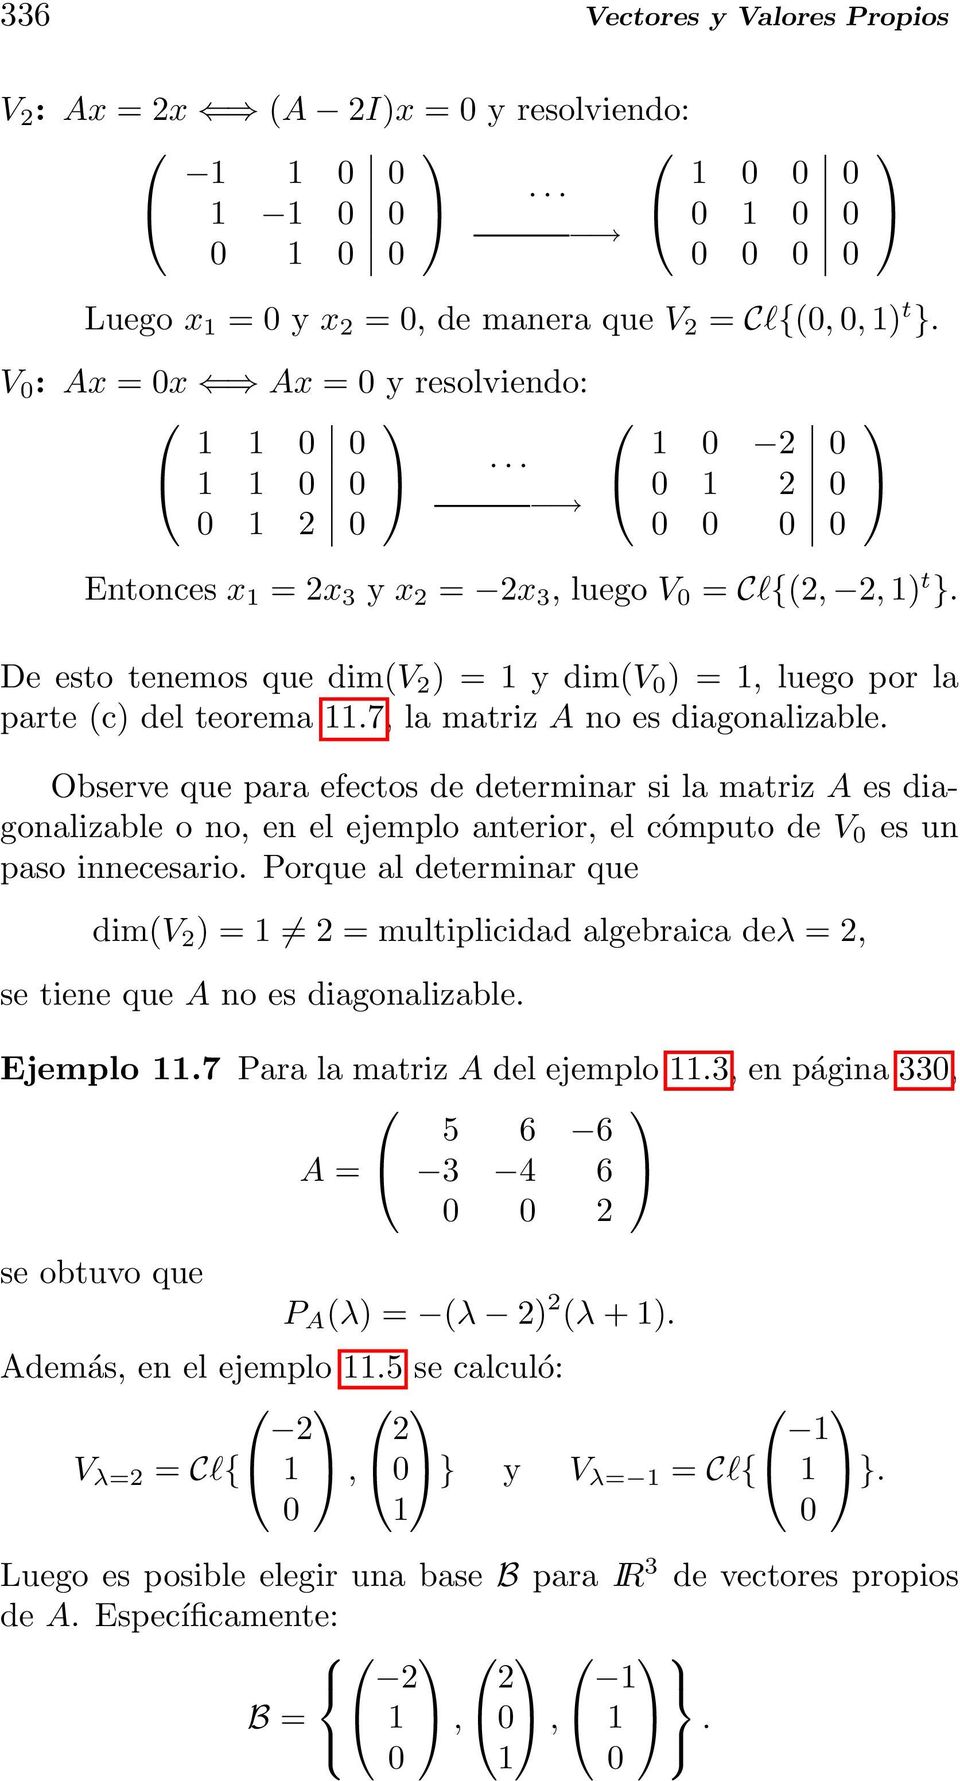 De esto tenemos que dim(v ) = 1 y dim(v 0 ) = 1, luego por la parte (c) del teorema 11.7, la matriz A no es diagonalizable.